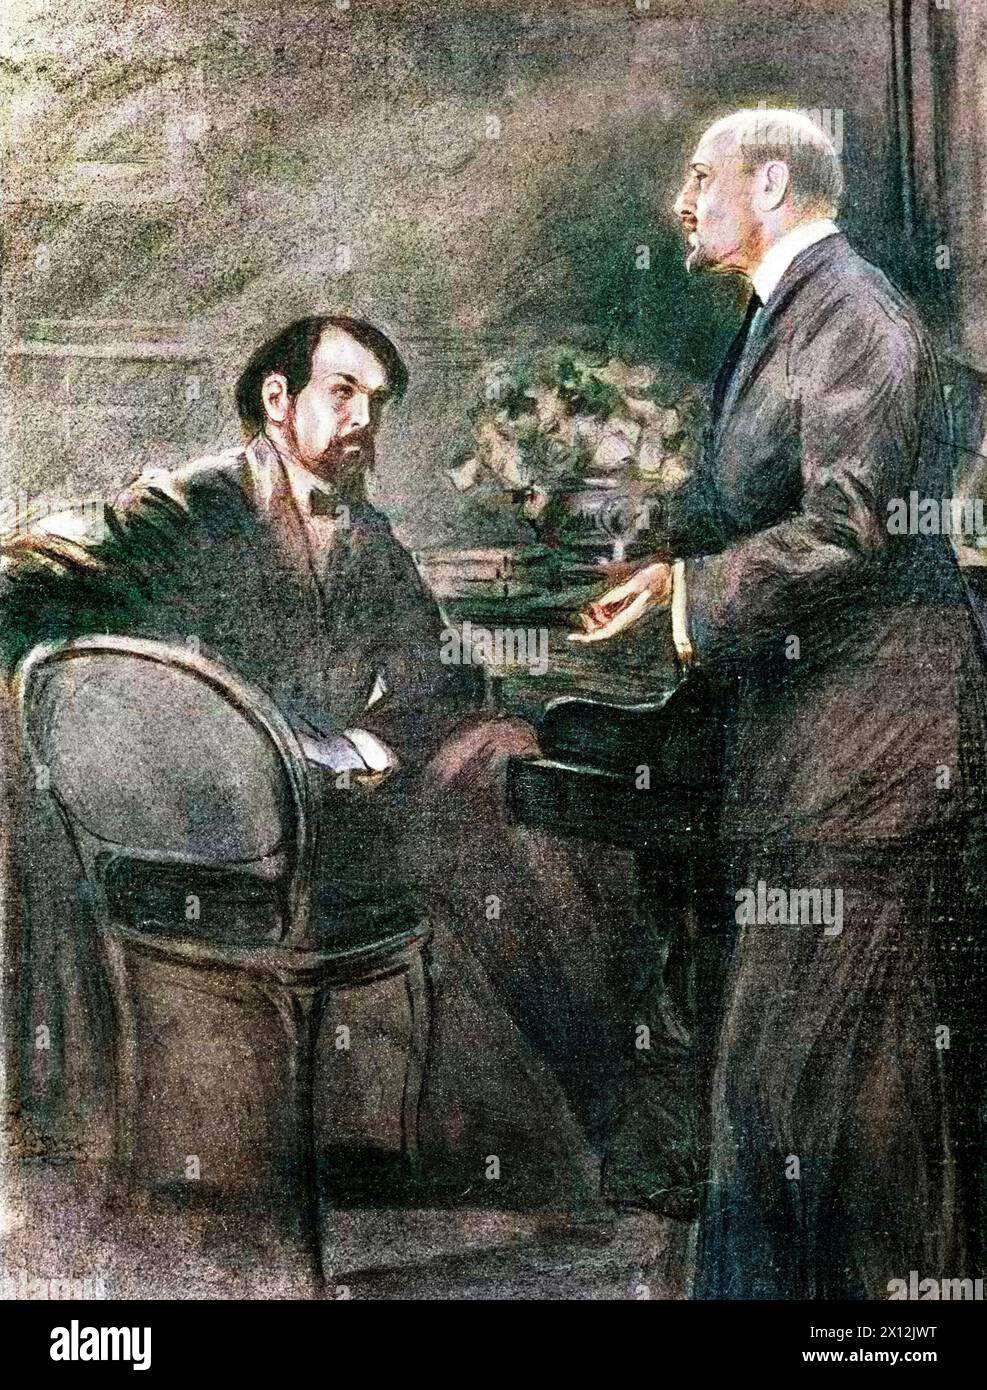 Claude Debussy et Gabriele d’Annunzio lors des répétitions pour « le martyre de Saint Sébastien » à Paris, France - 1911 Banque D'Images